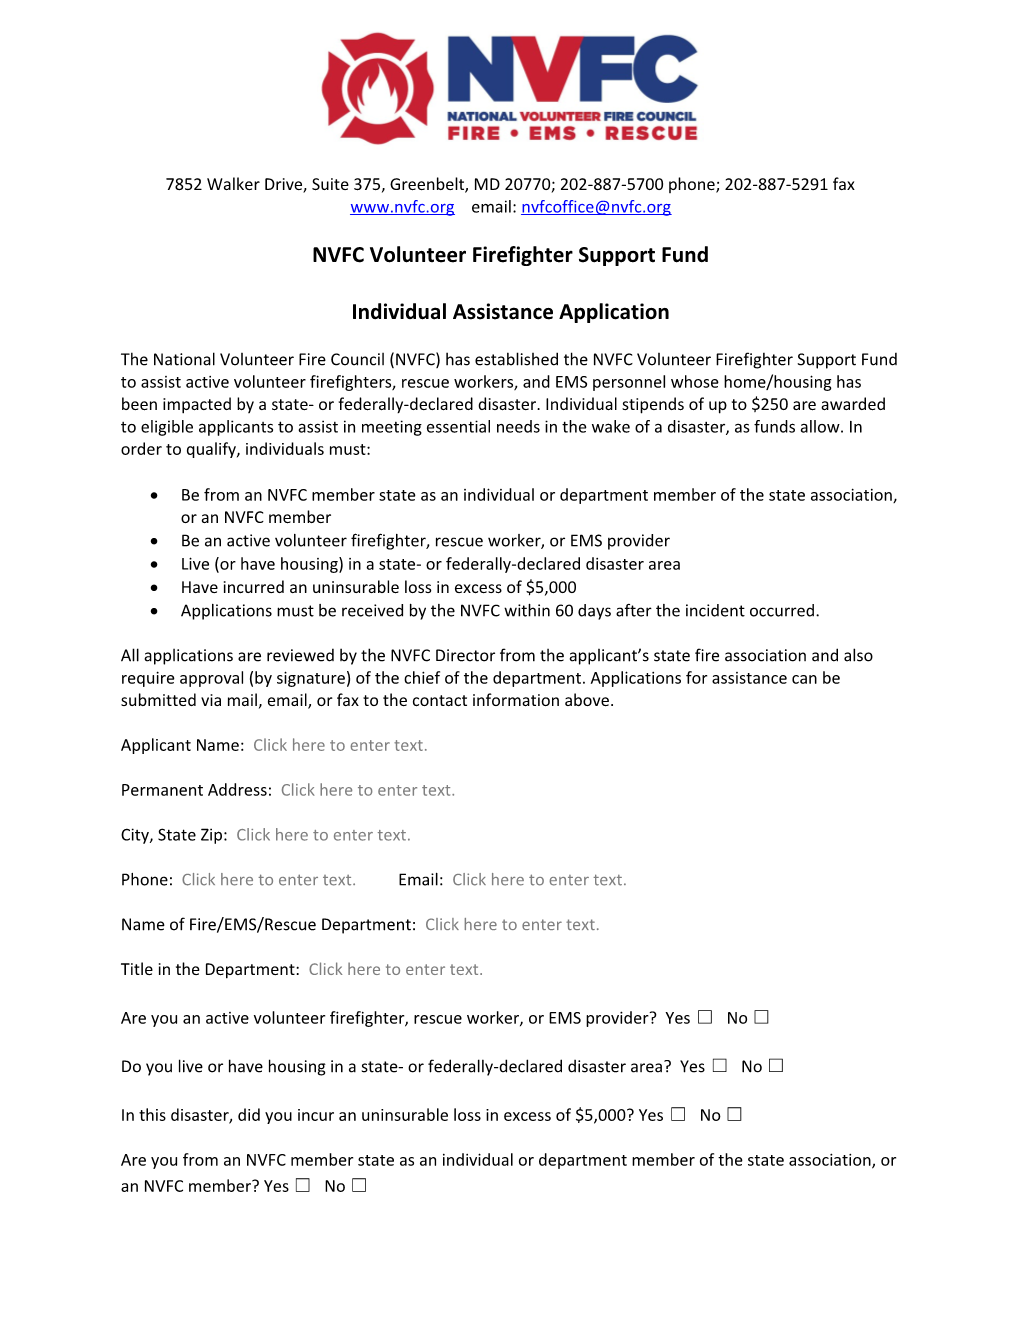 NVFC Volunteer Firefighter Support Fund Application for Assistancepage 1